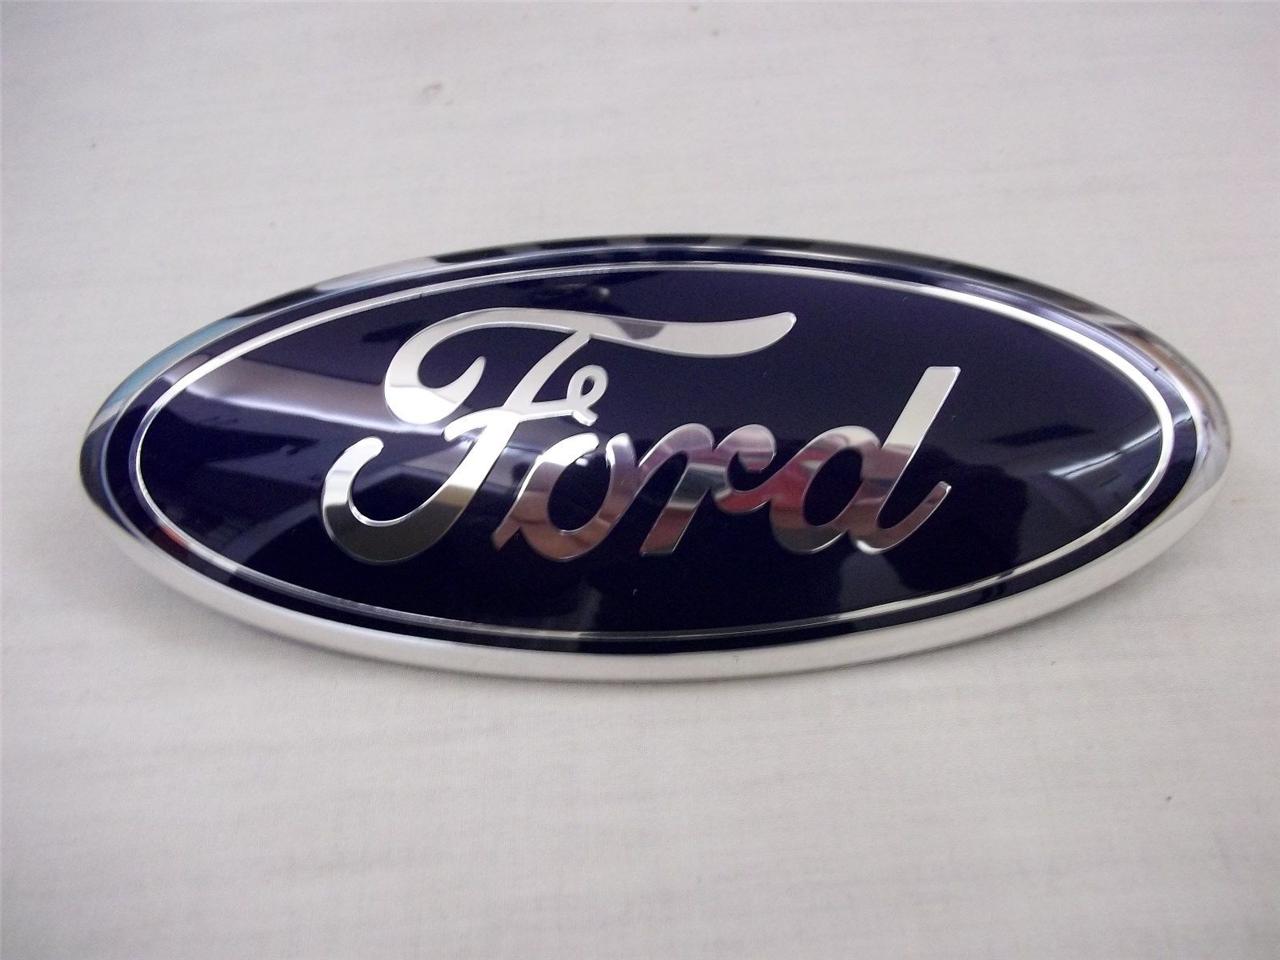 2006 Ford grille emblem #6